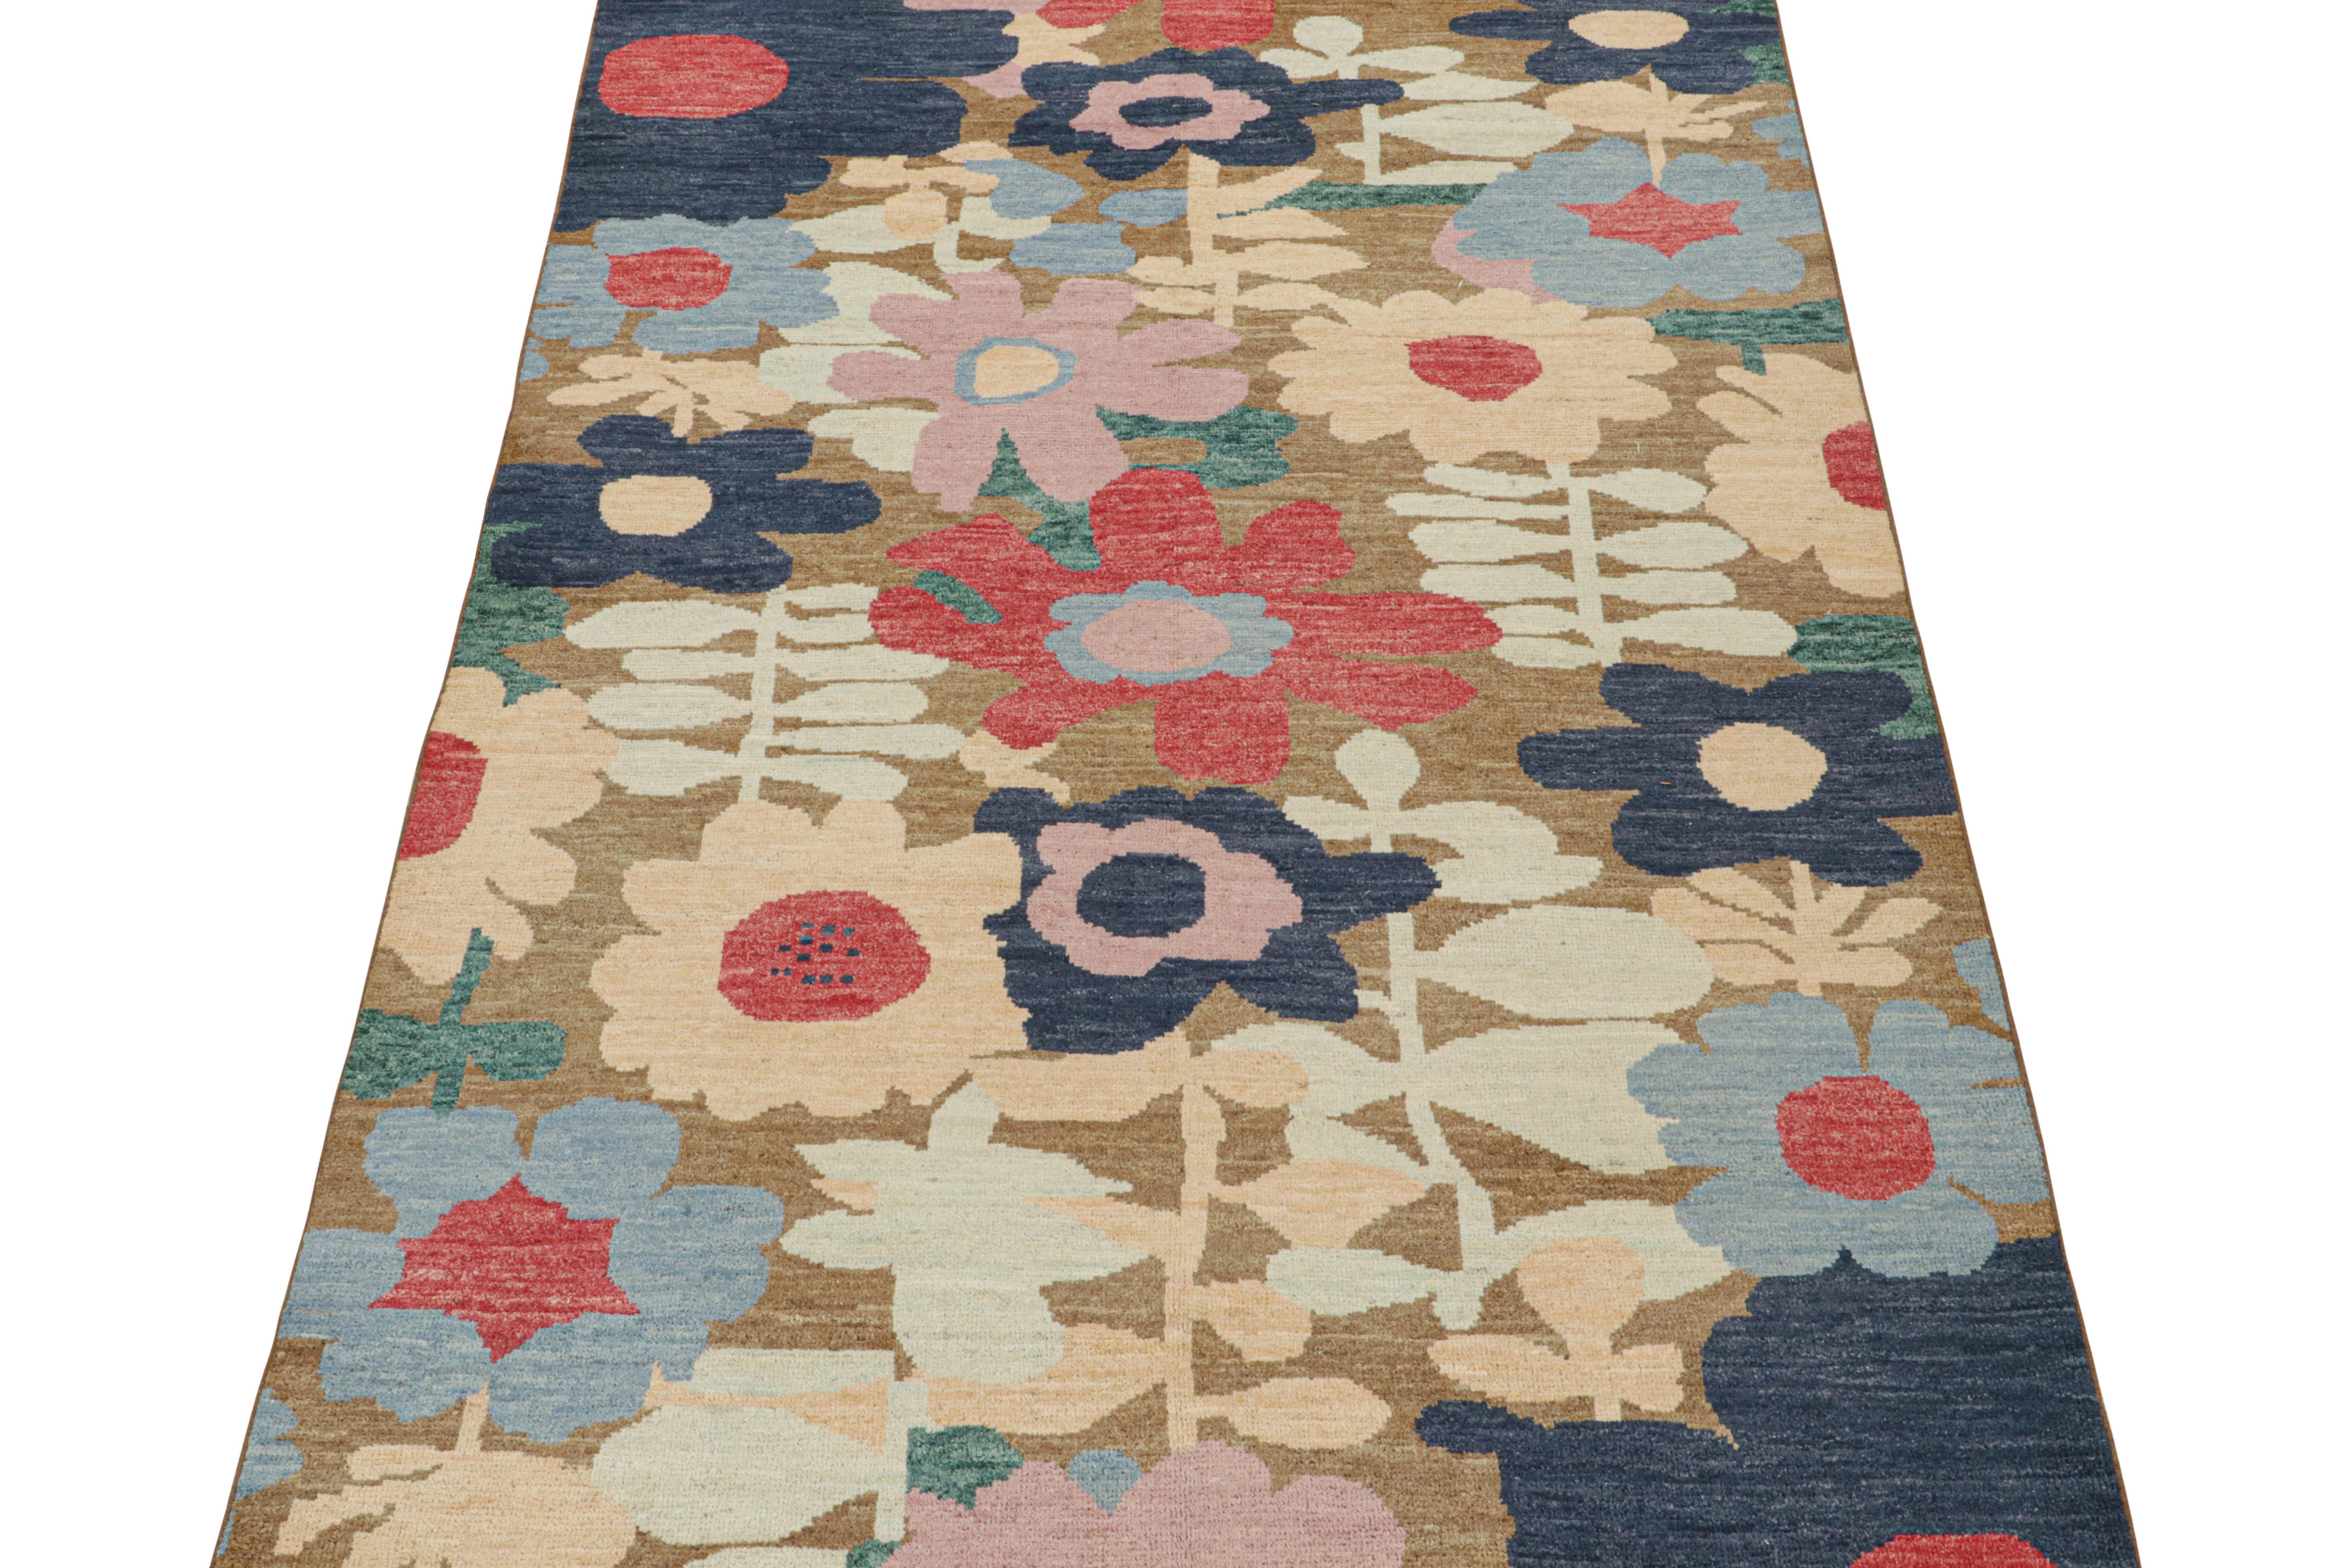 Ce tapis contemporain 6x10 est un nouvel ajout excitant à la collection de tapis modernes de Rug & Kilim. Noué à la main en laine, son design est une audacieuse interprétation abstraite de motifs botaniques.

Ce design particulier utilise des